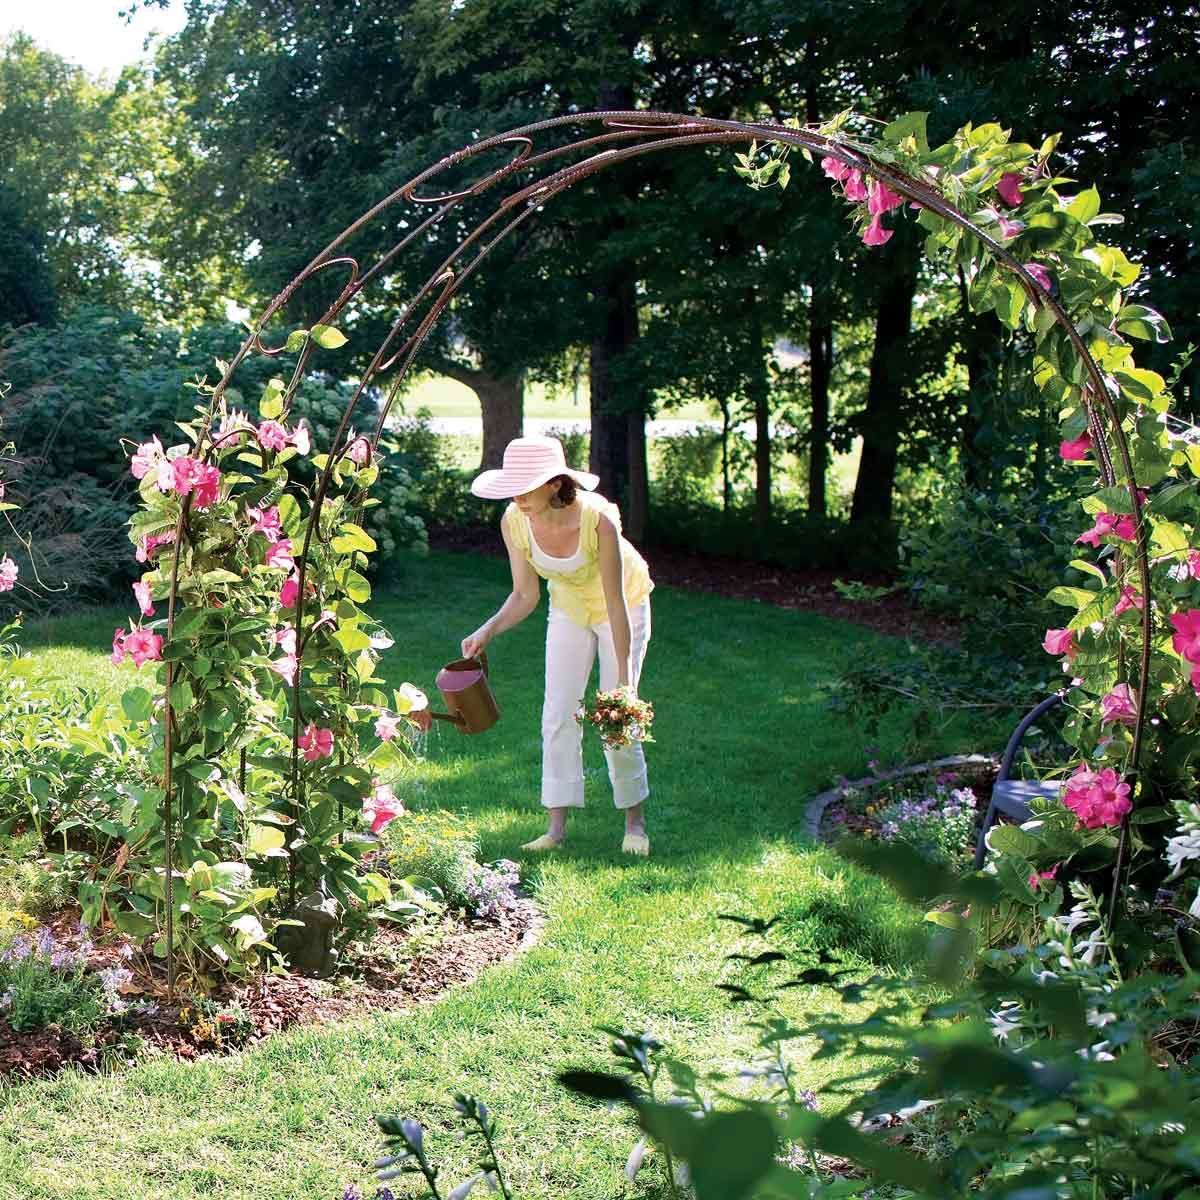 Build a Garden Archway - Build a Garden Archway -   14 diy Garden arch ideas